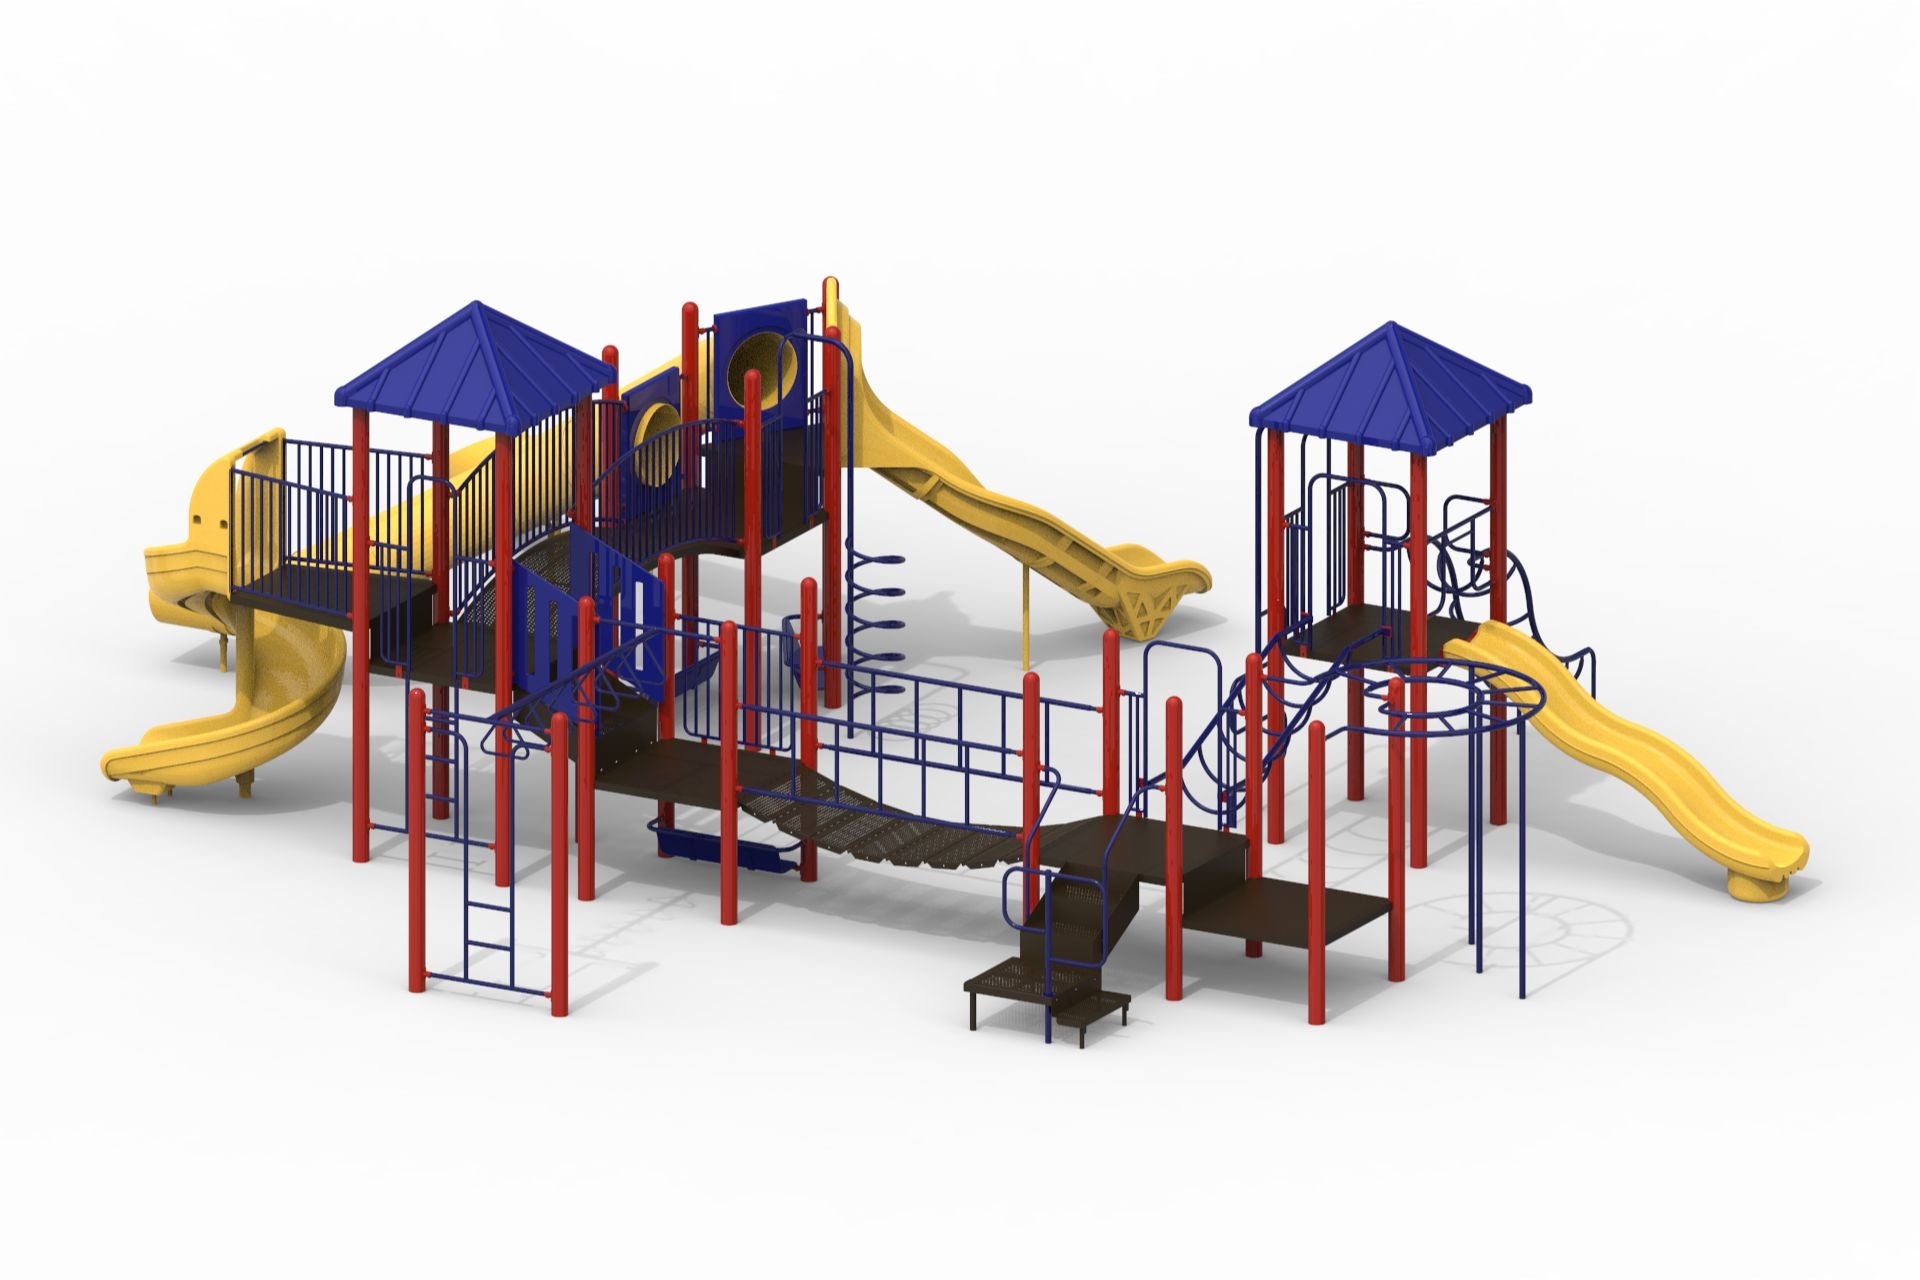 IMG_7990 The Big Slide  Childhood memories, Playground equipment